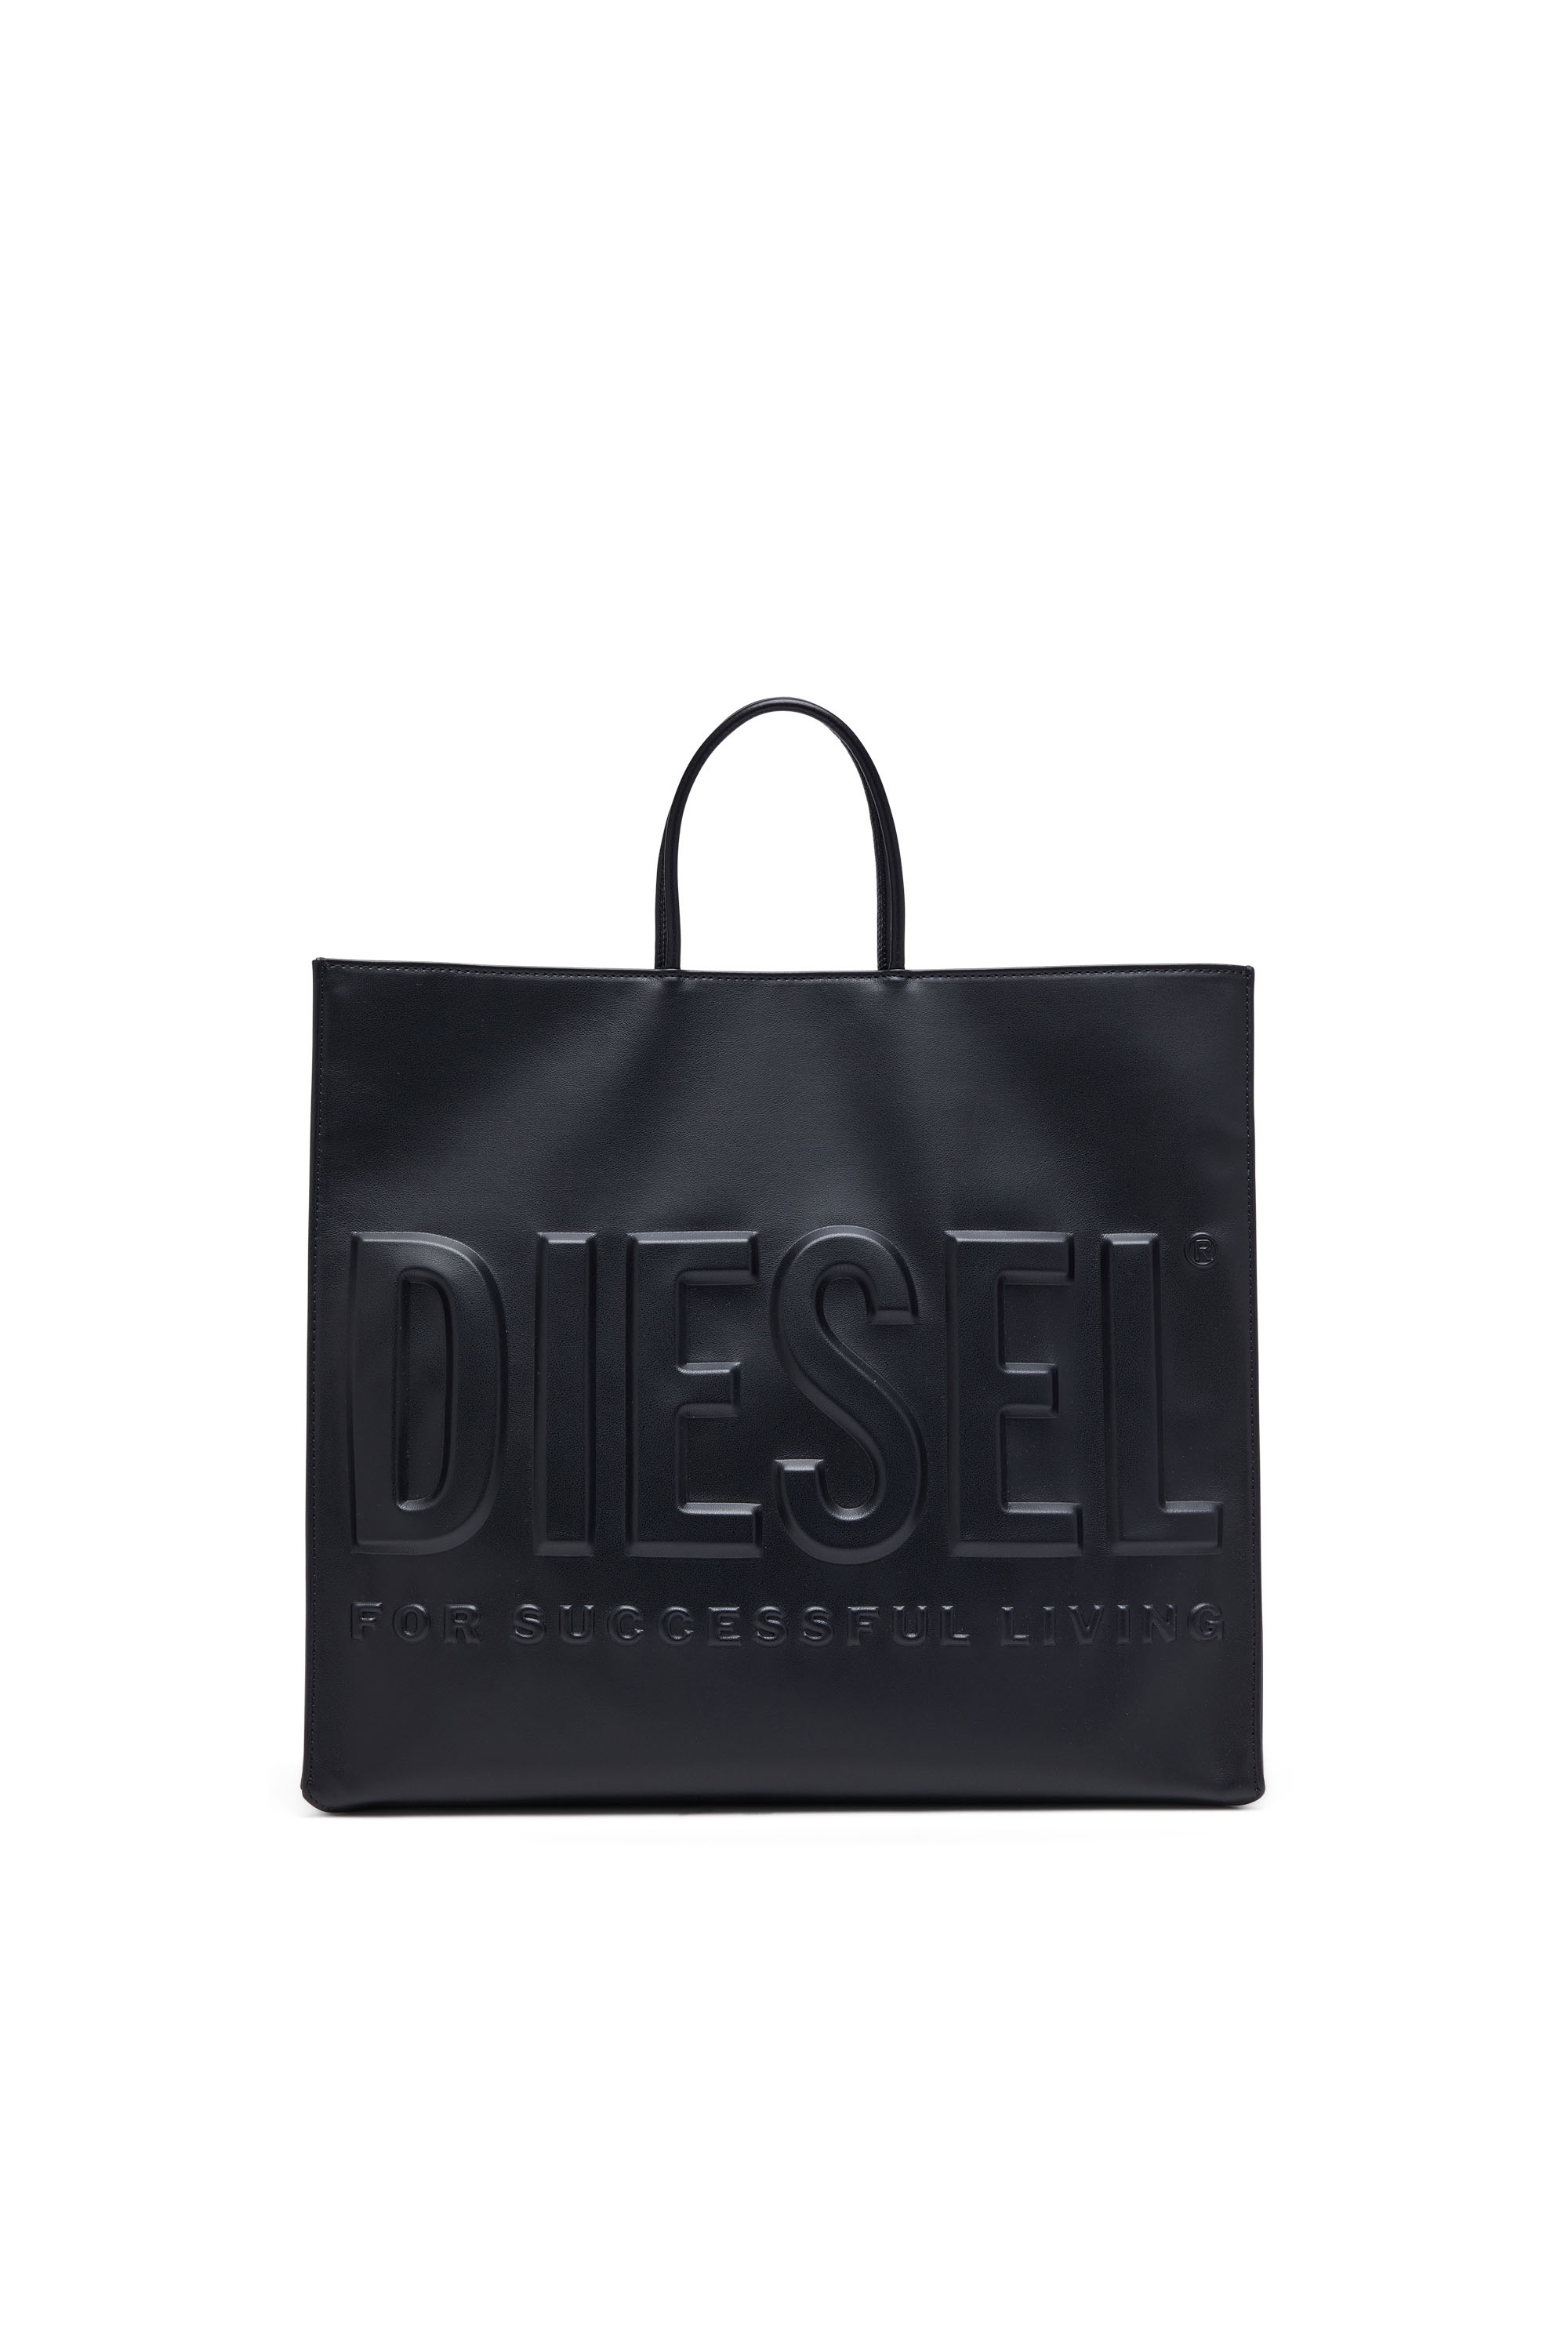 Diesel - DSL 3D TOTE EW X, Black - Image 1